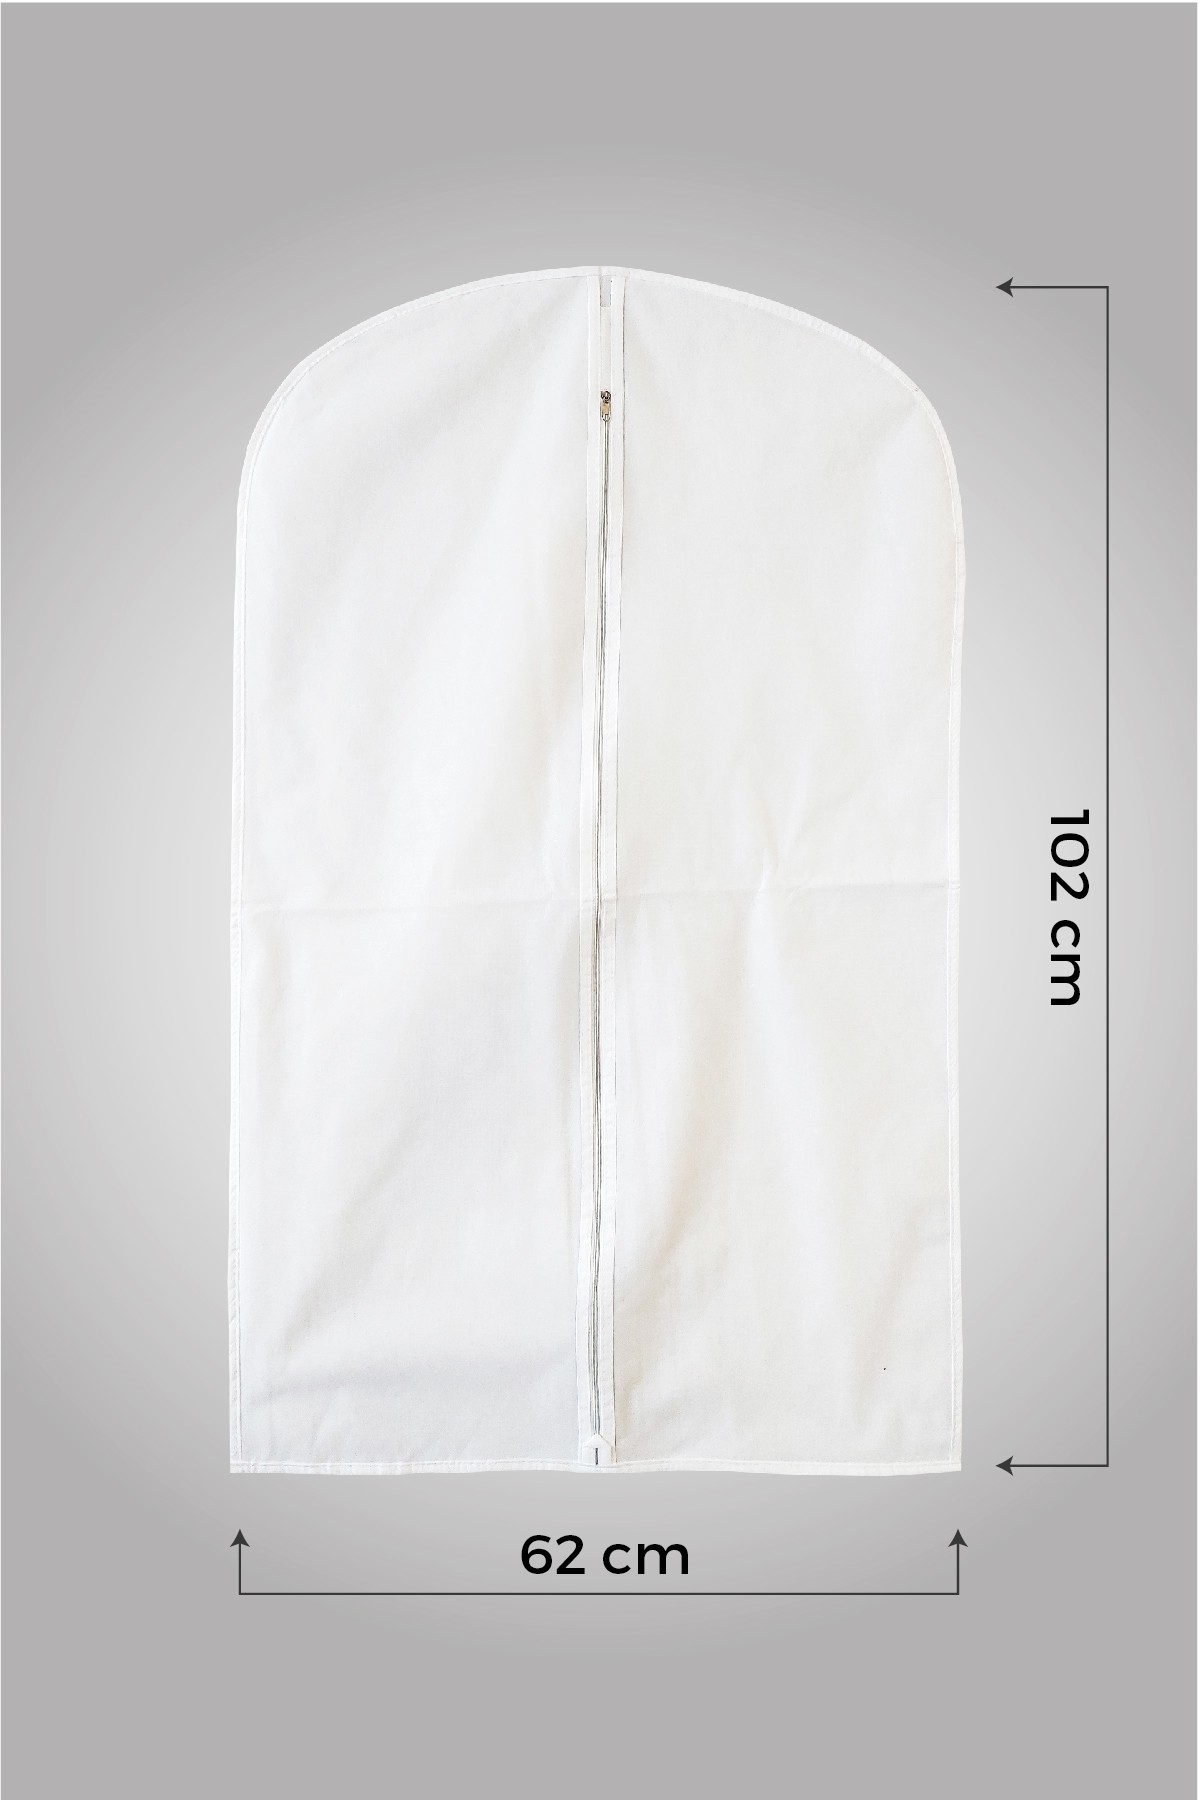 Beyaz Gamboç Ceket - Kaban - Takım Elbise Kılıfı 62 x 102cm. 5 Adet